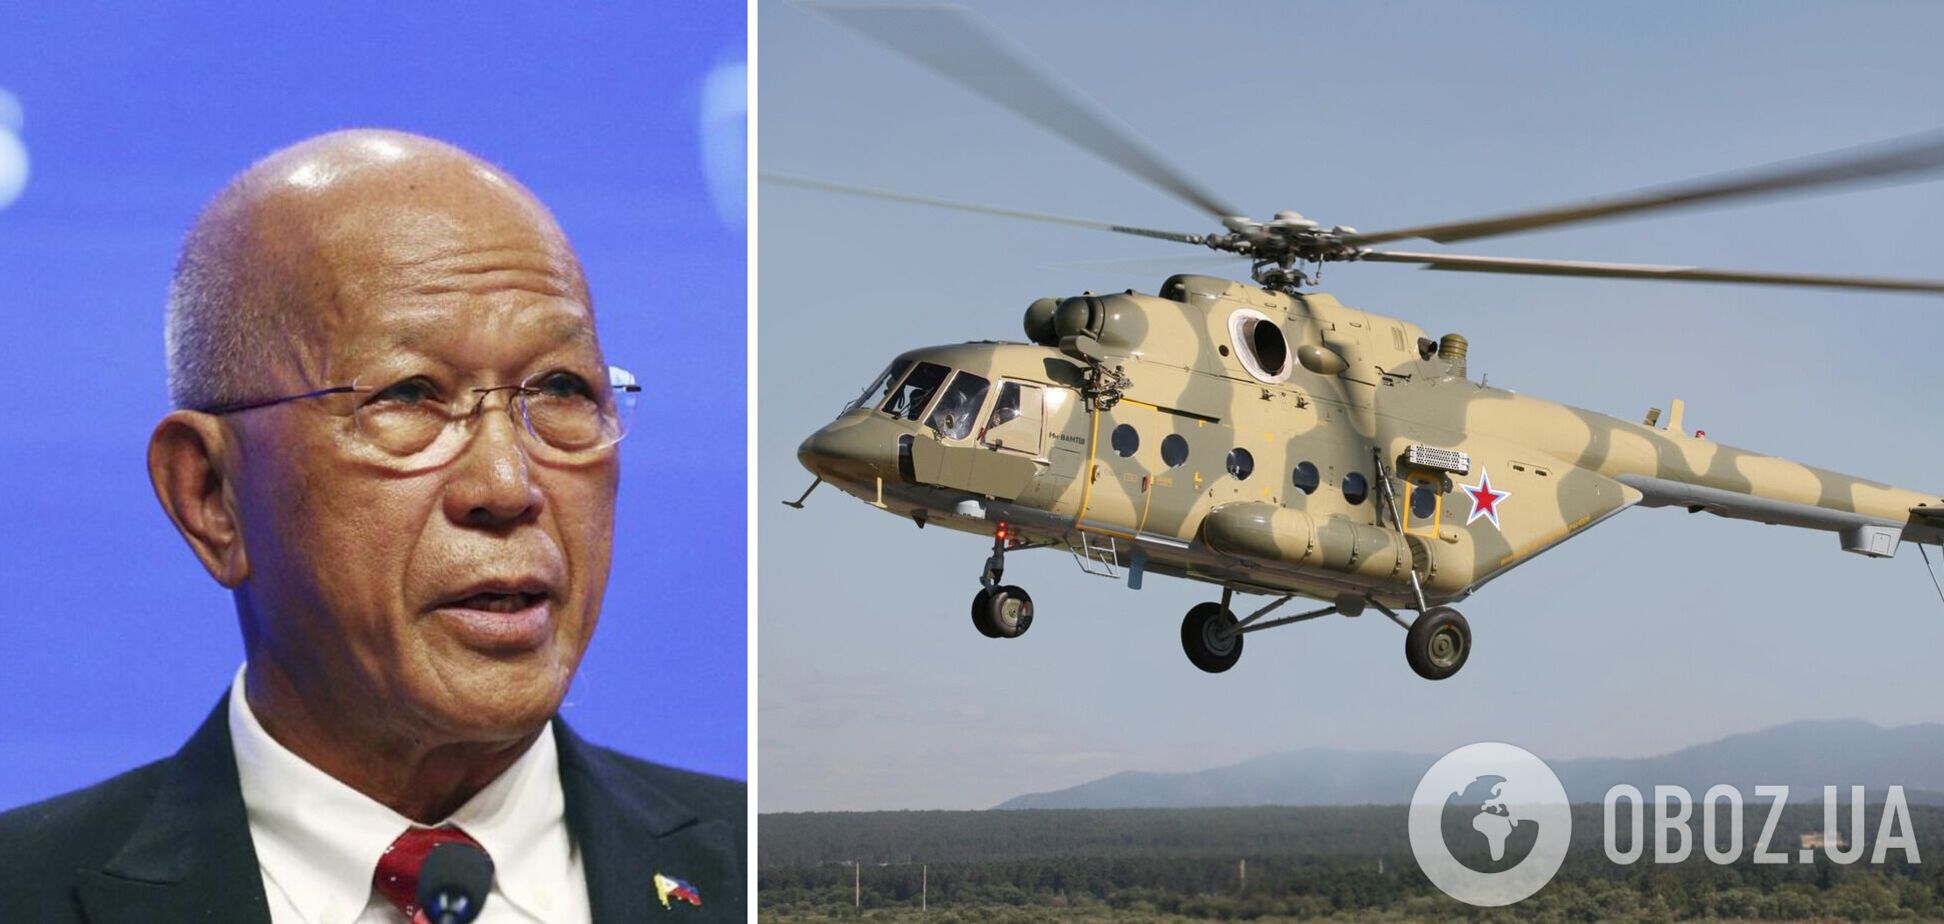 Филиппины решили не связываться с российскими вертолетами